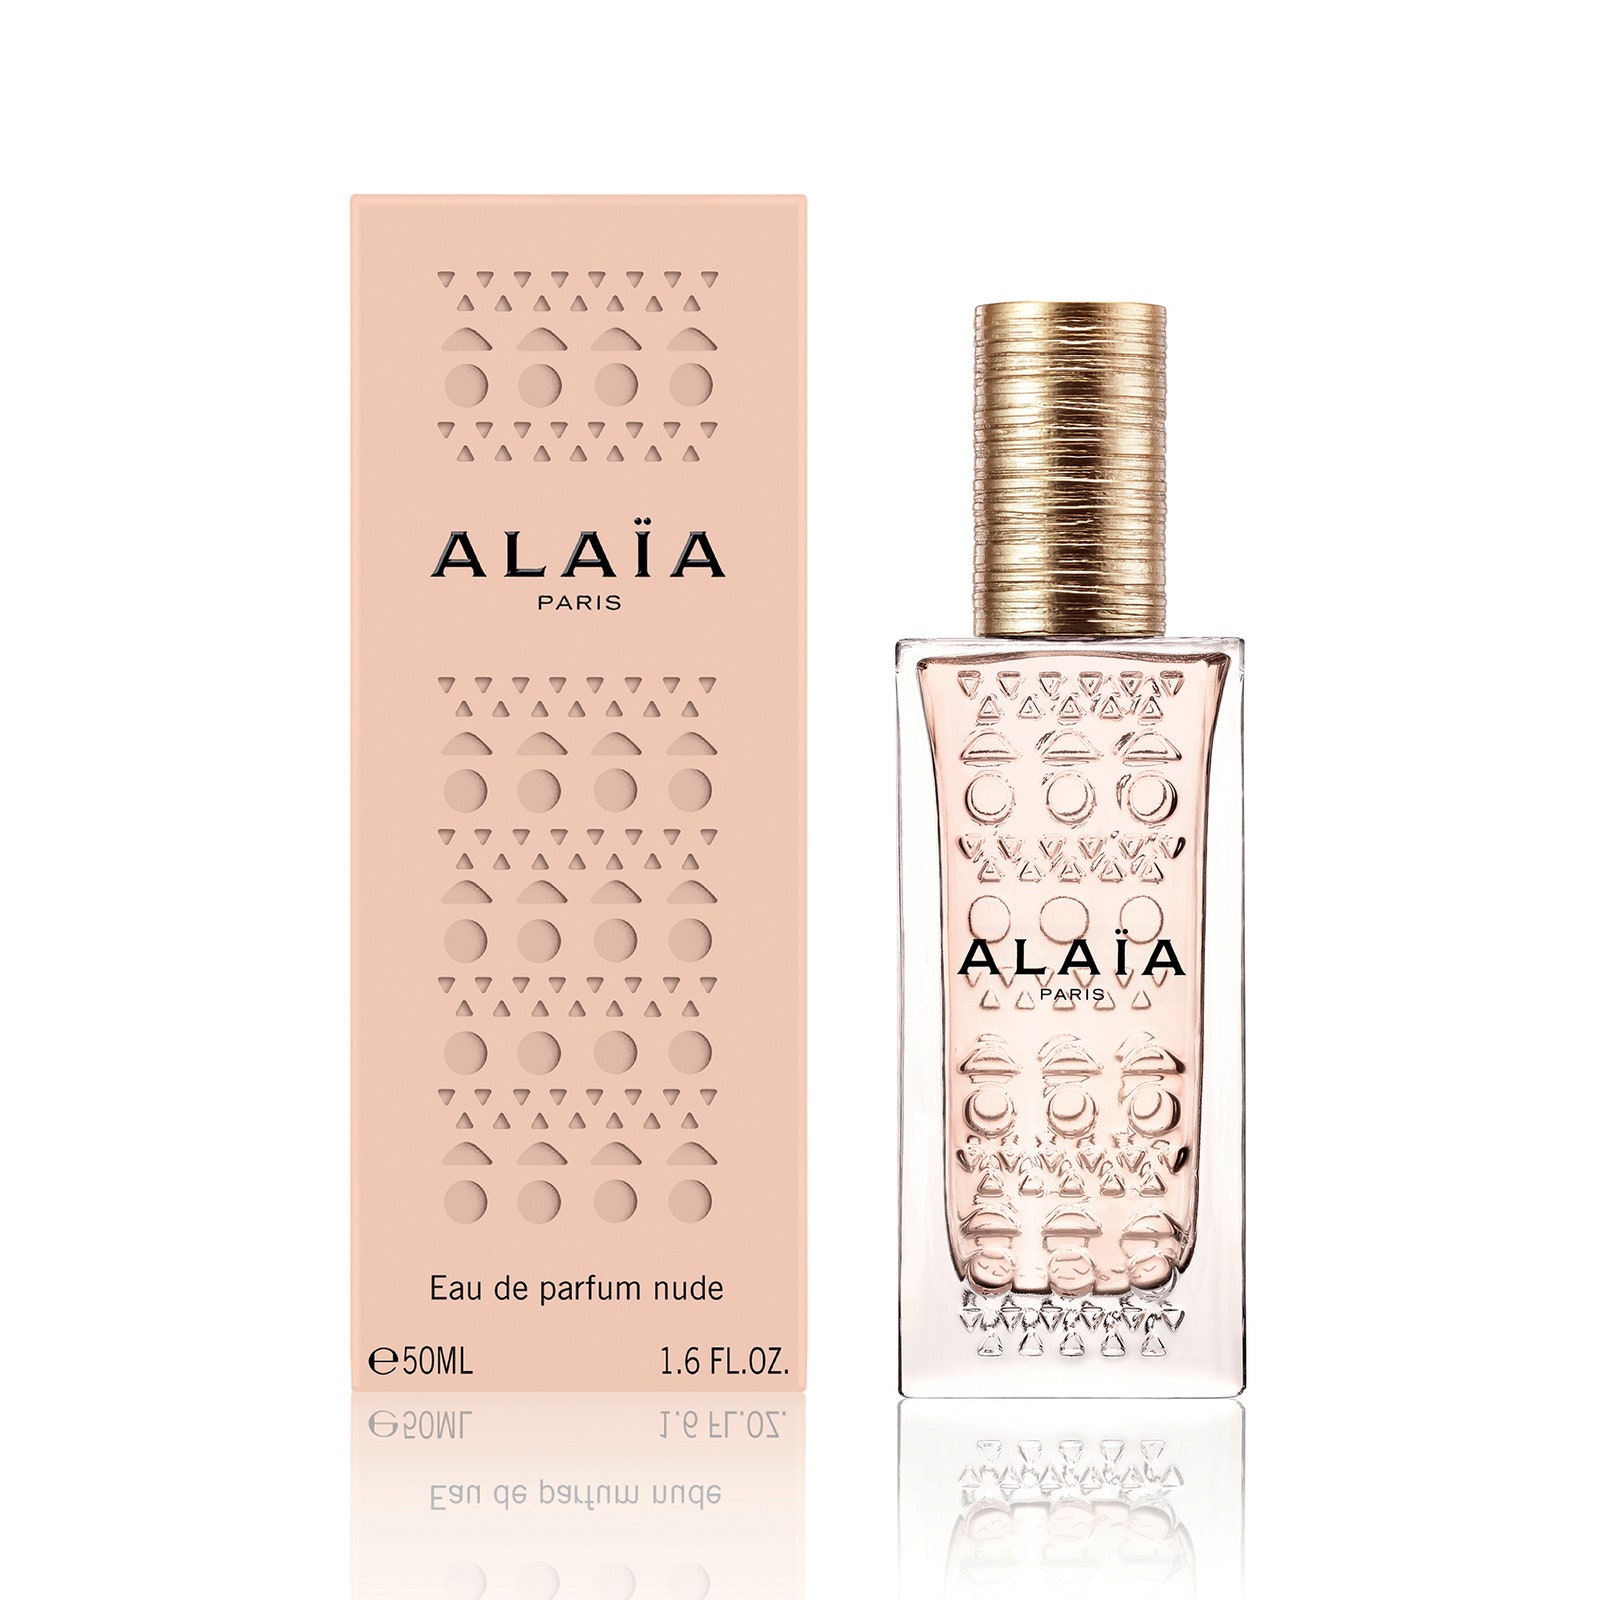 Alaïa Eau de Parfum Nude третий аромат в коллекции с базовой нотой кожи